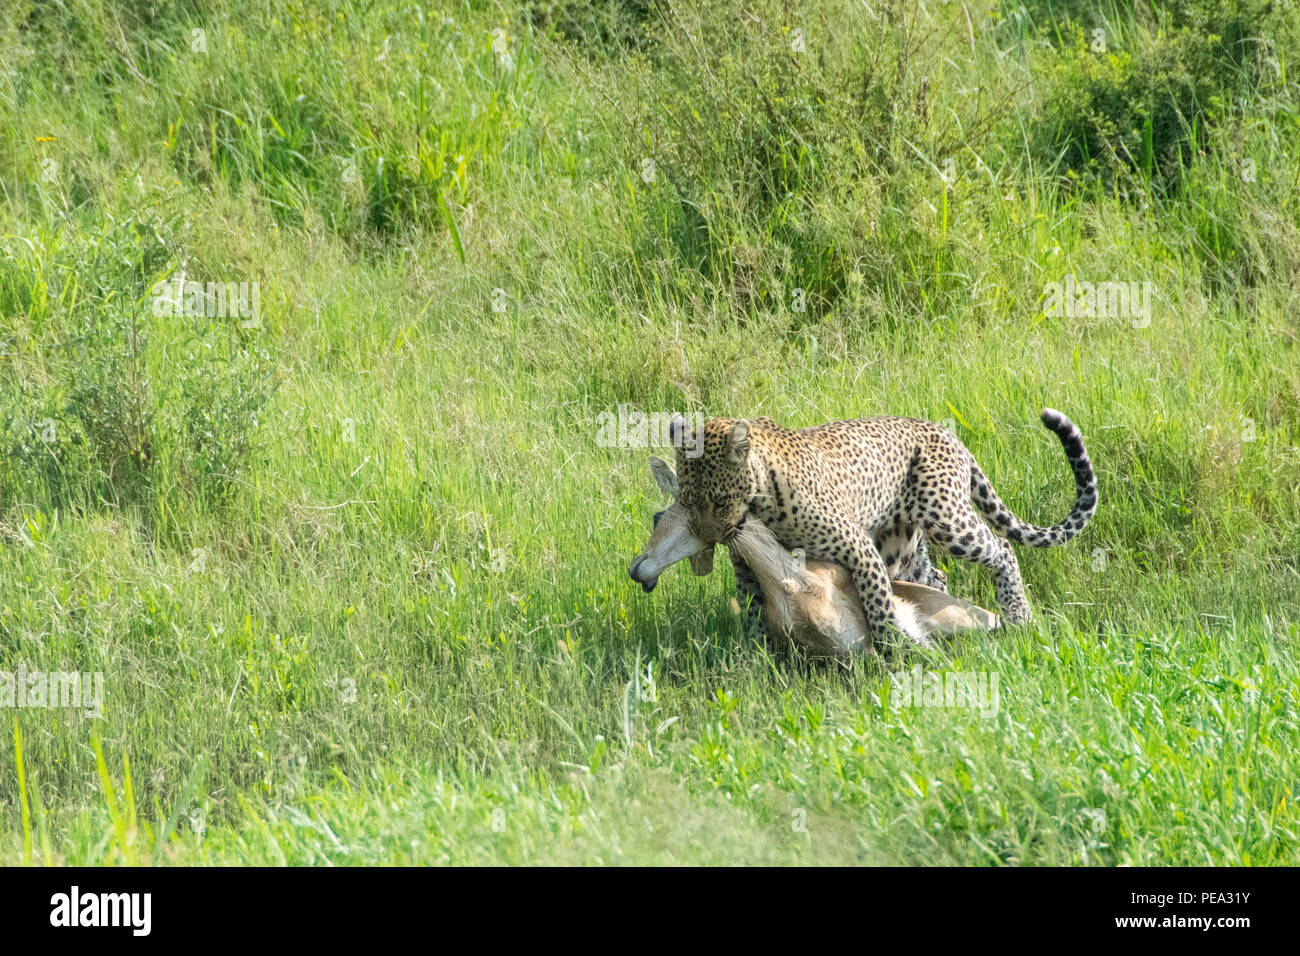 Un leopardo teniendo su gacela a un cómodo lugar para alimentarse de ella. Foto de stock